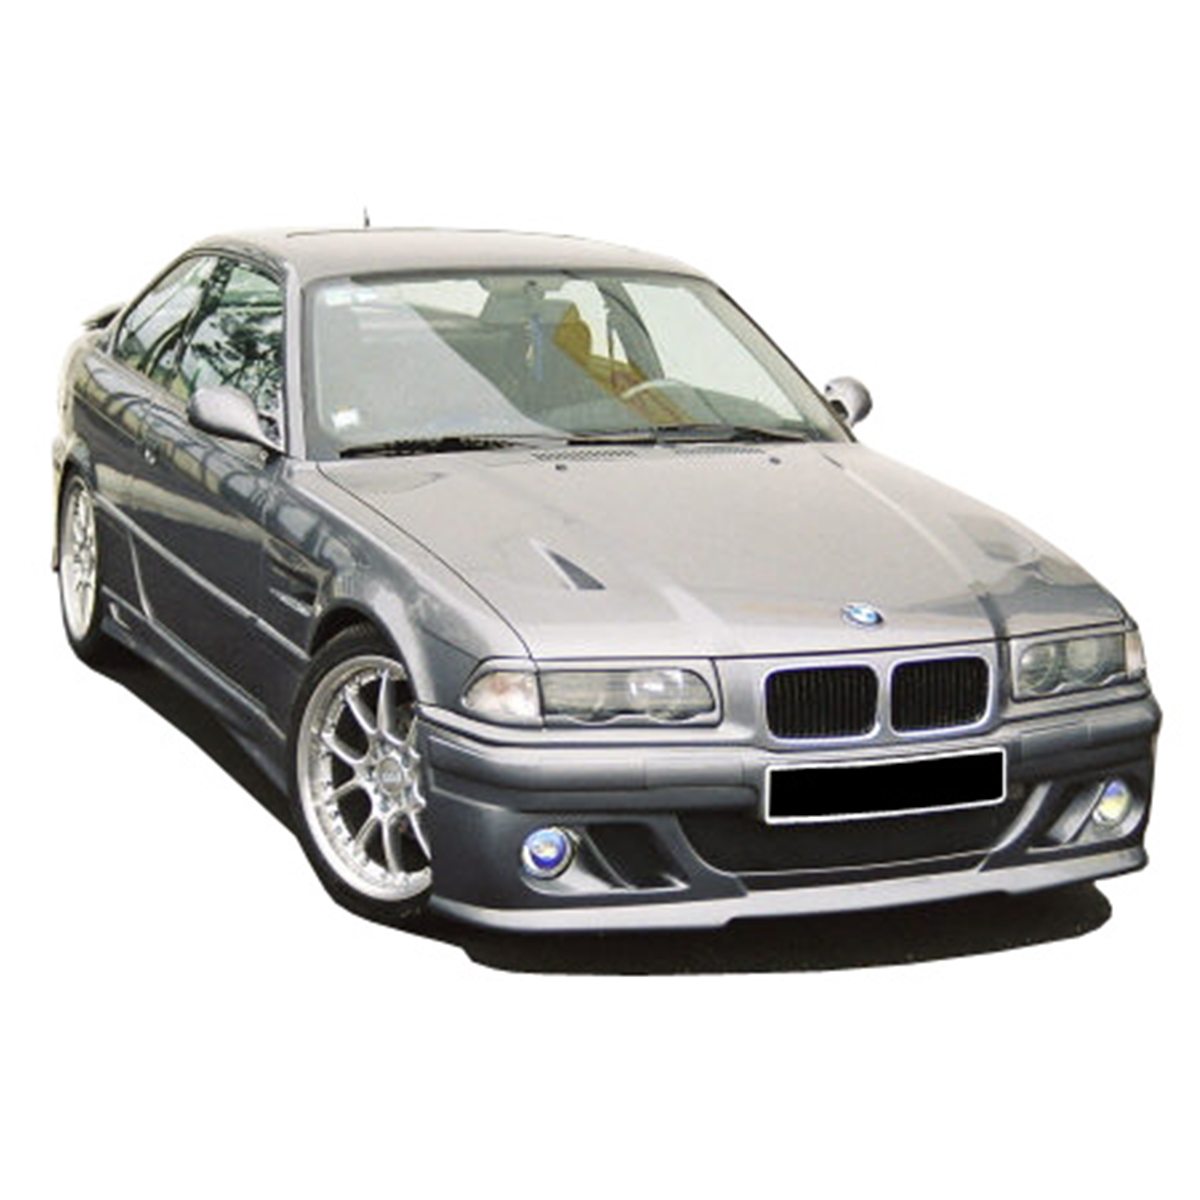 BMW-E36-Illusion-frt-PCA003